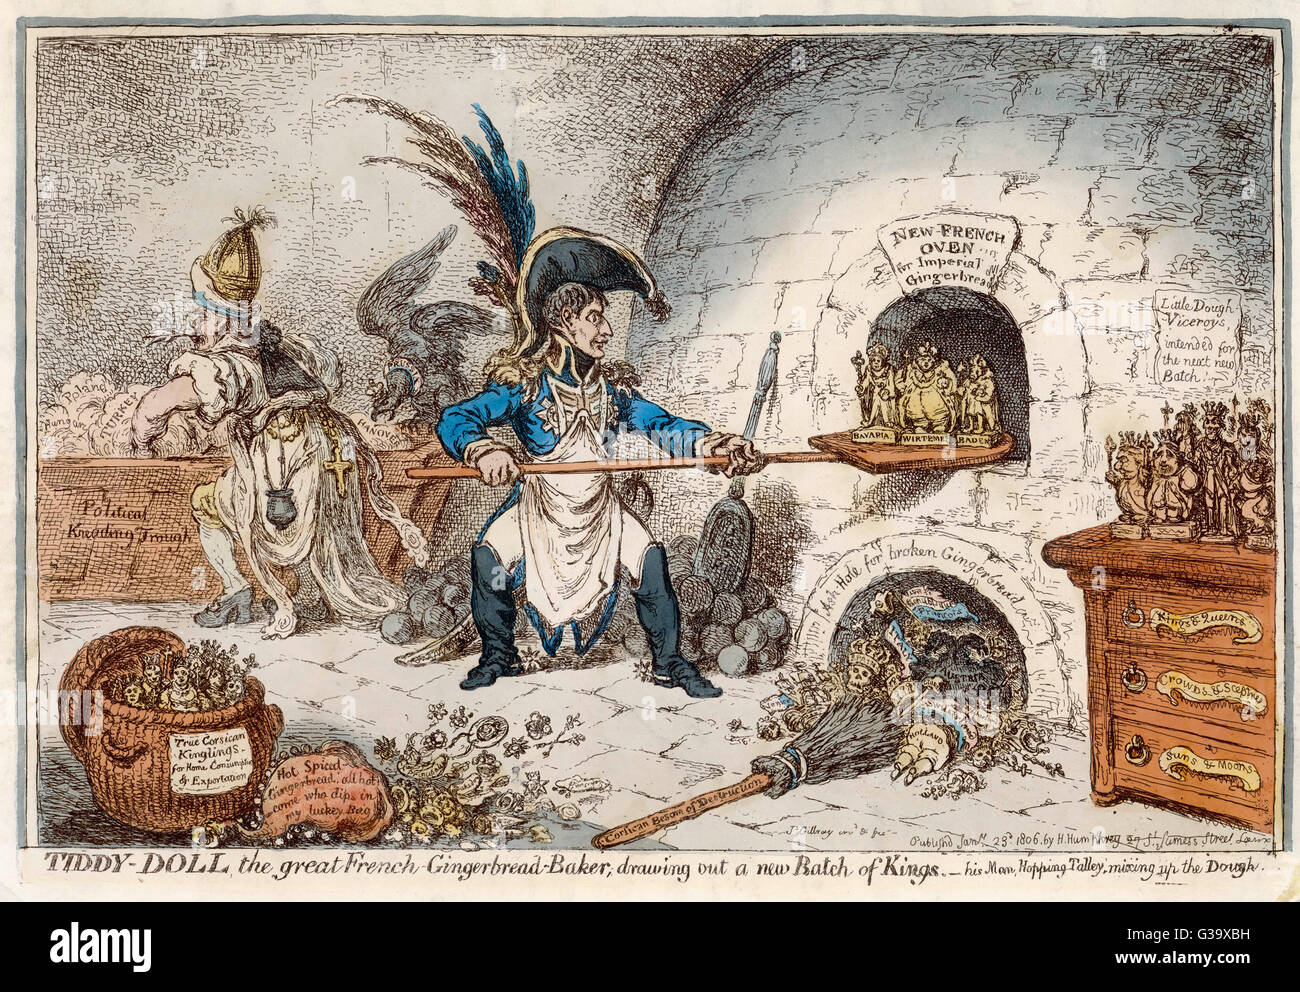 Napoleon der Lebkuchen-Bäcker erstellen neue Könige - ein Kommentar zu seiner Gewohnheit der Ernennung seiner Verwandten auf den thronen der besiegten oder besetzten Nationen Datum: 1806 Stockfoto